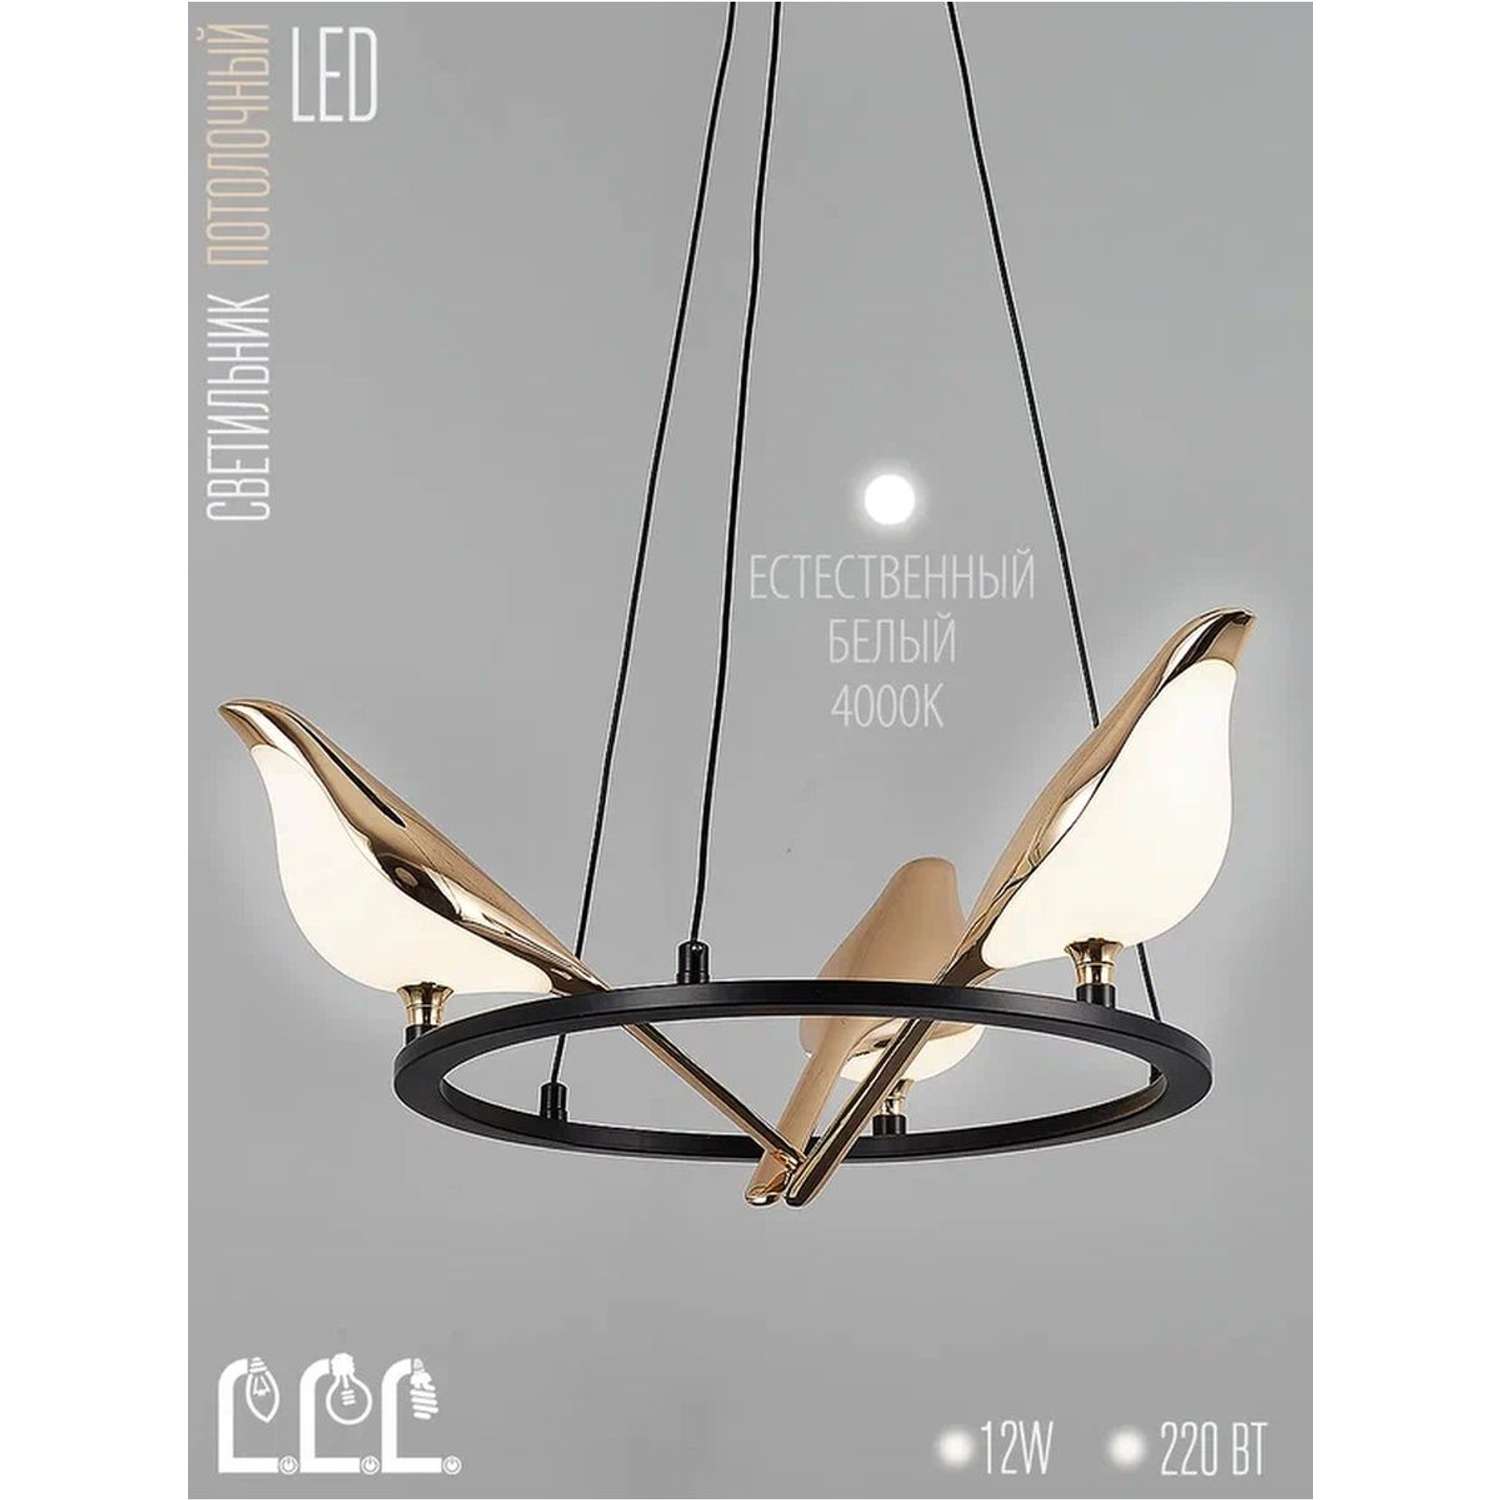 Потолочный светильник LLL KD7284 золотой никель Птицы с вращением на 360 градусов - фото 2